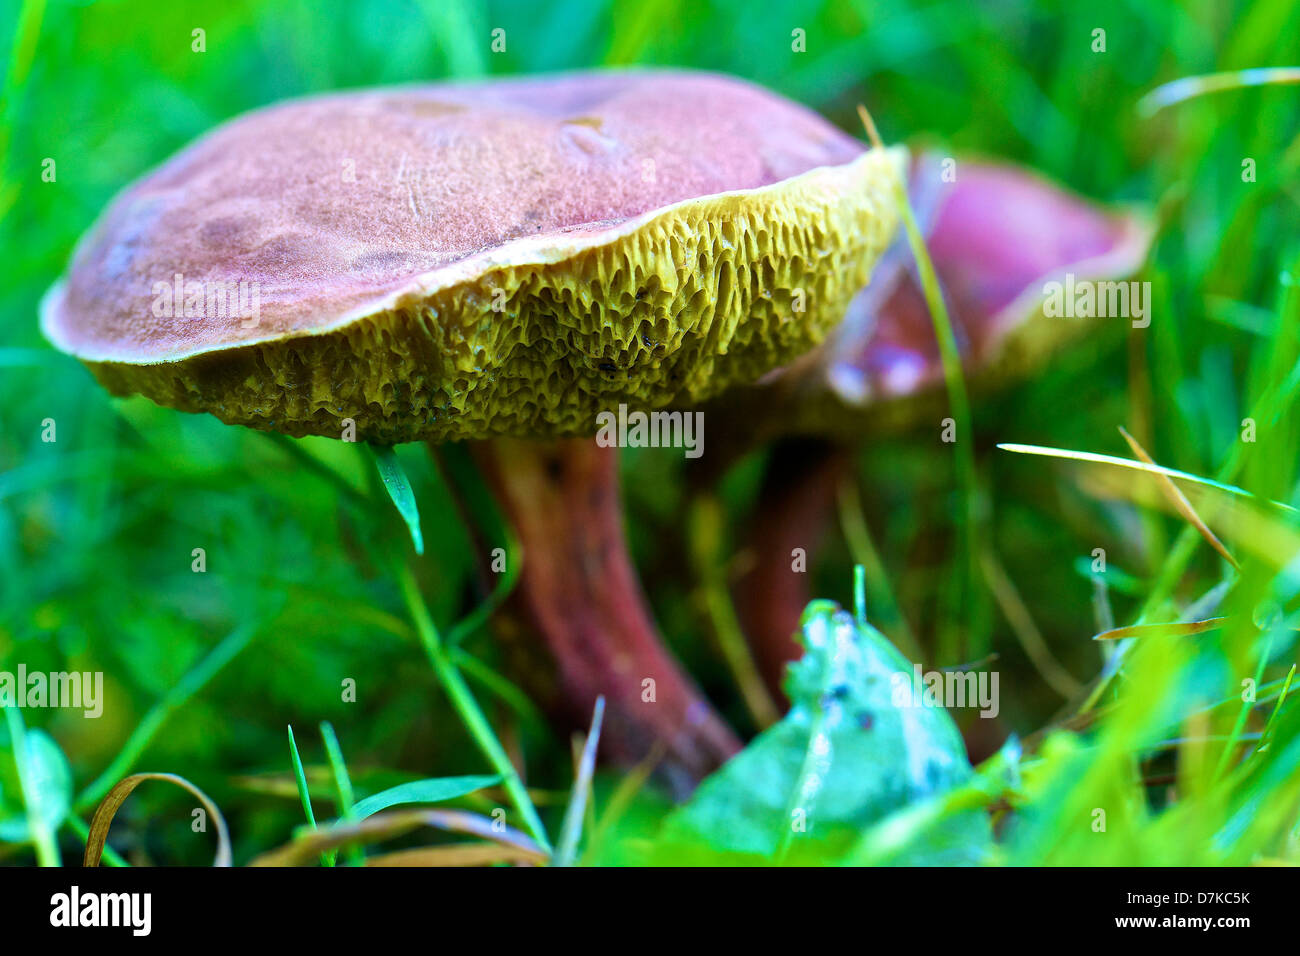 Germany, Hesse, Mushroom Stock Photo